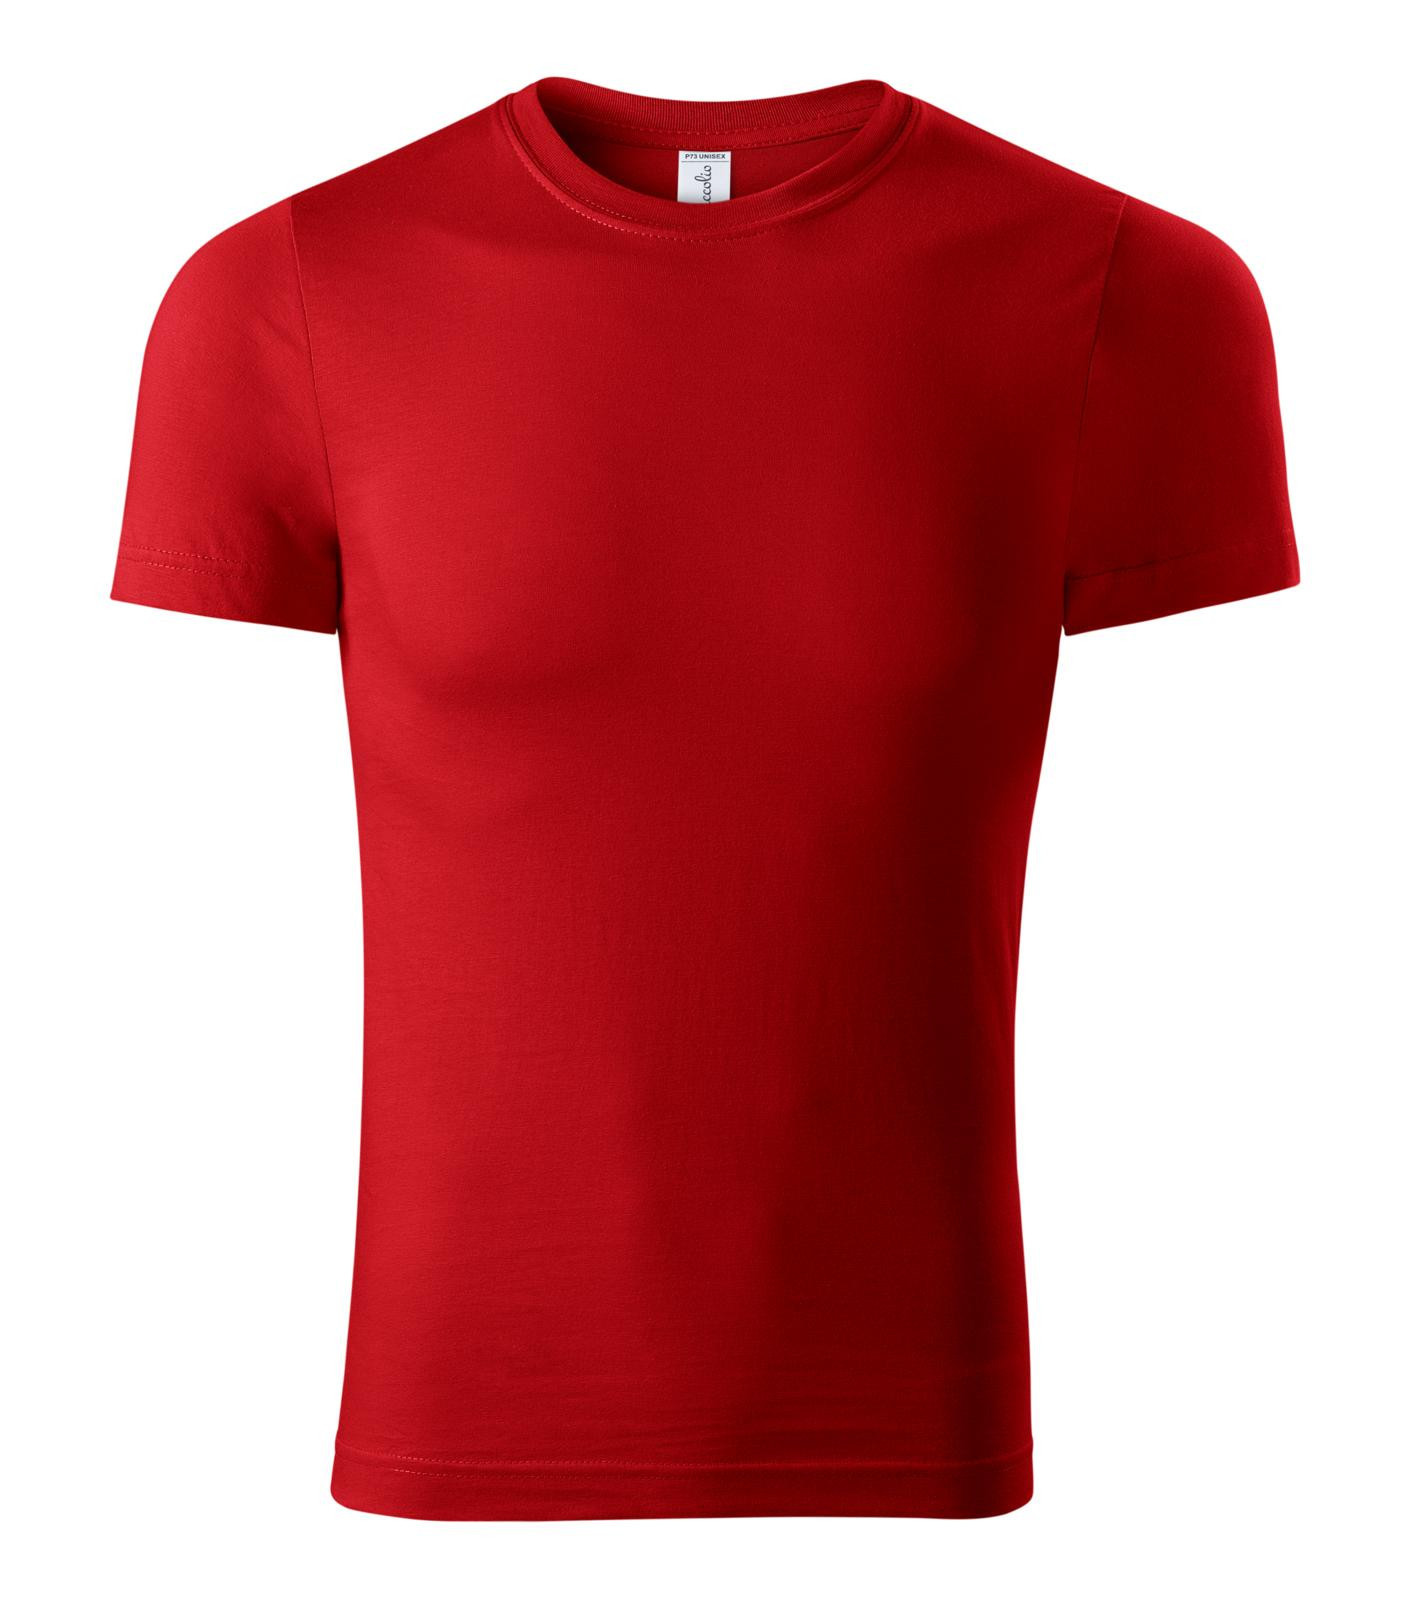 Unisex tričko Piccolio Paint P73 - veľkosť: XL, farba: červená